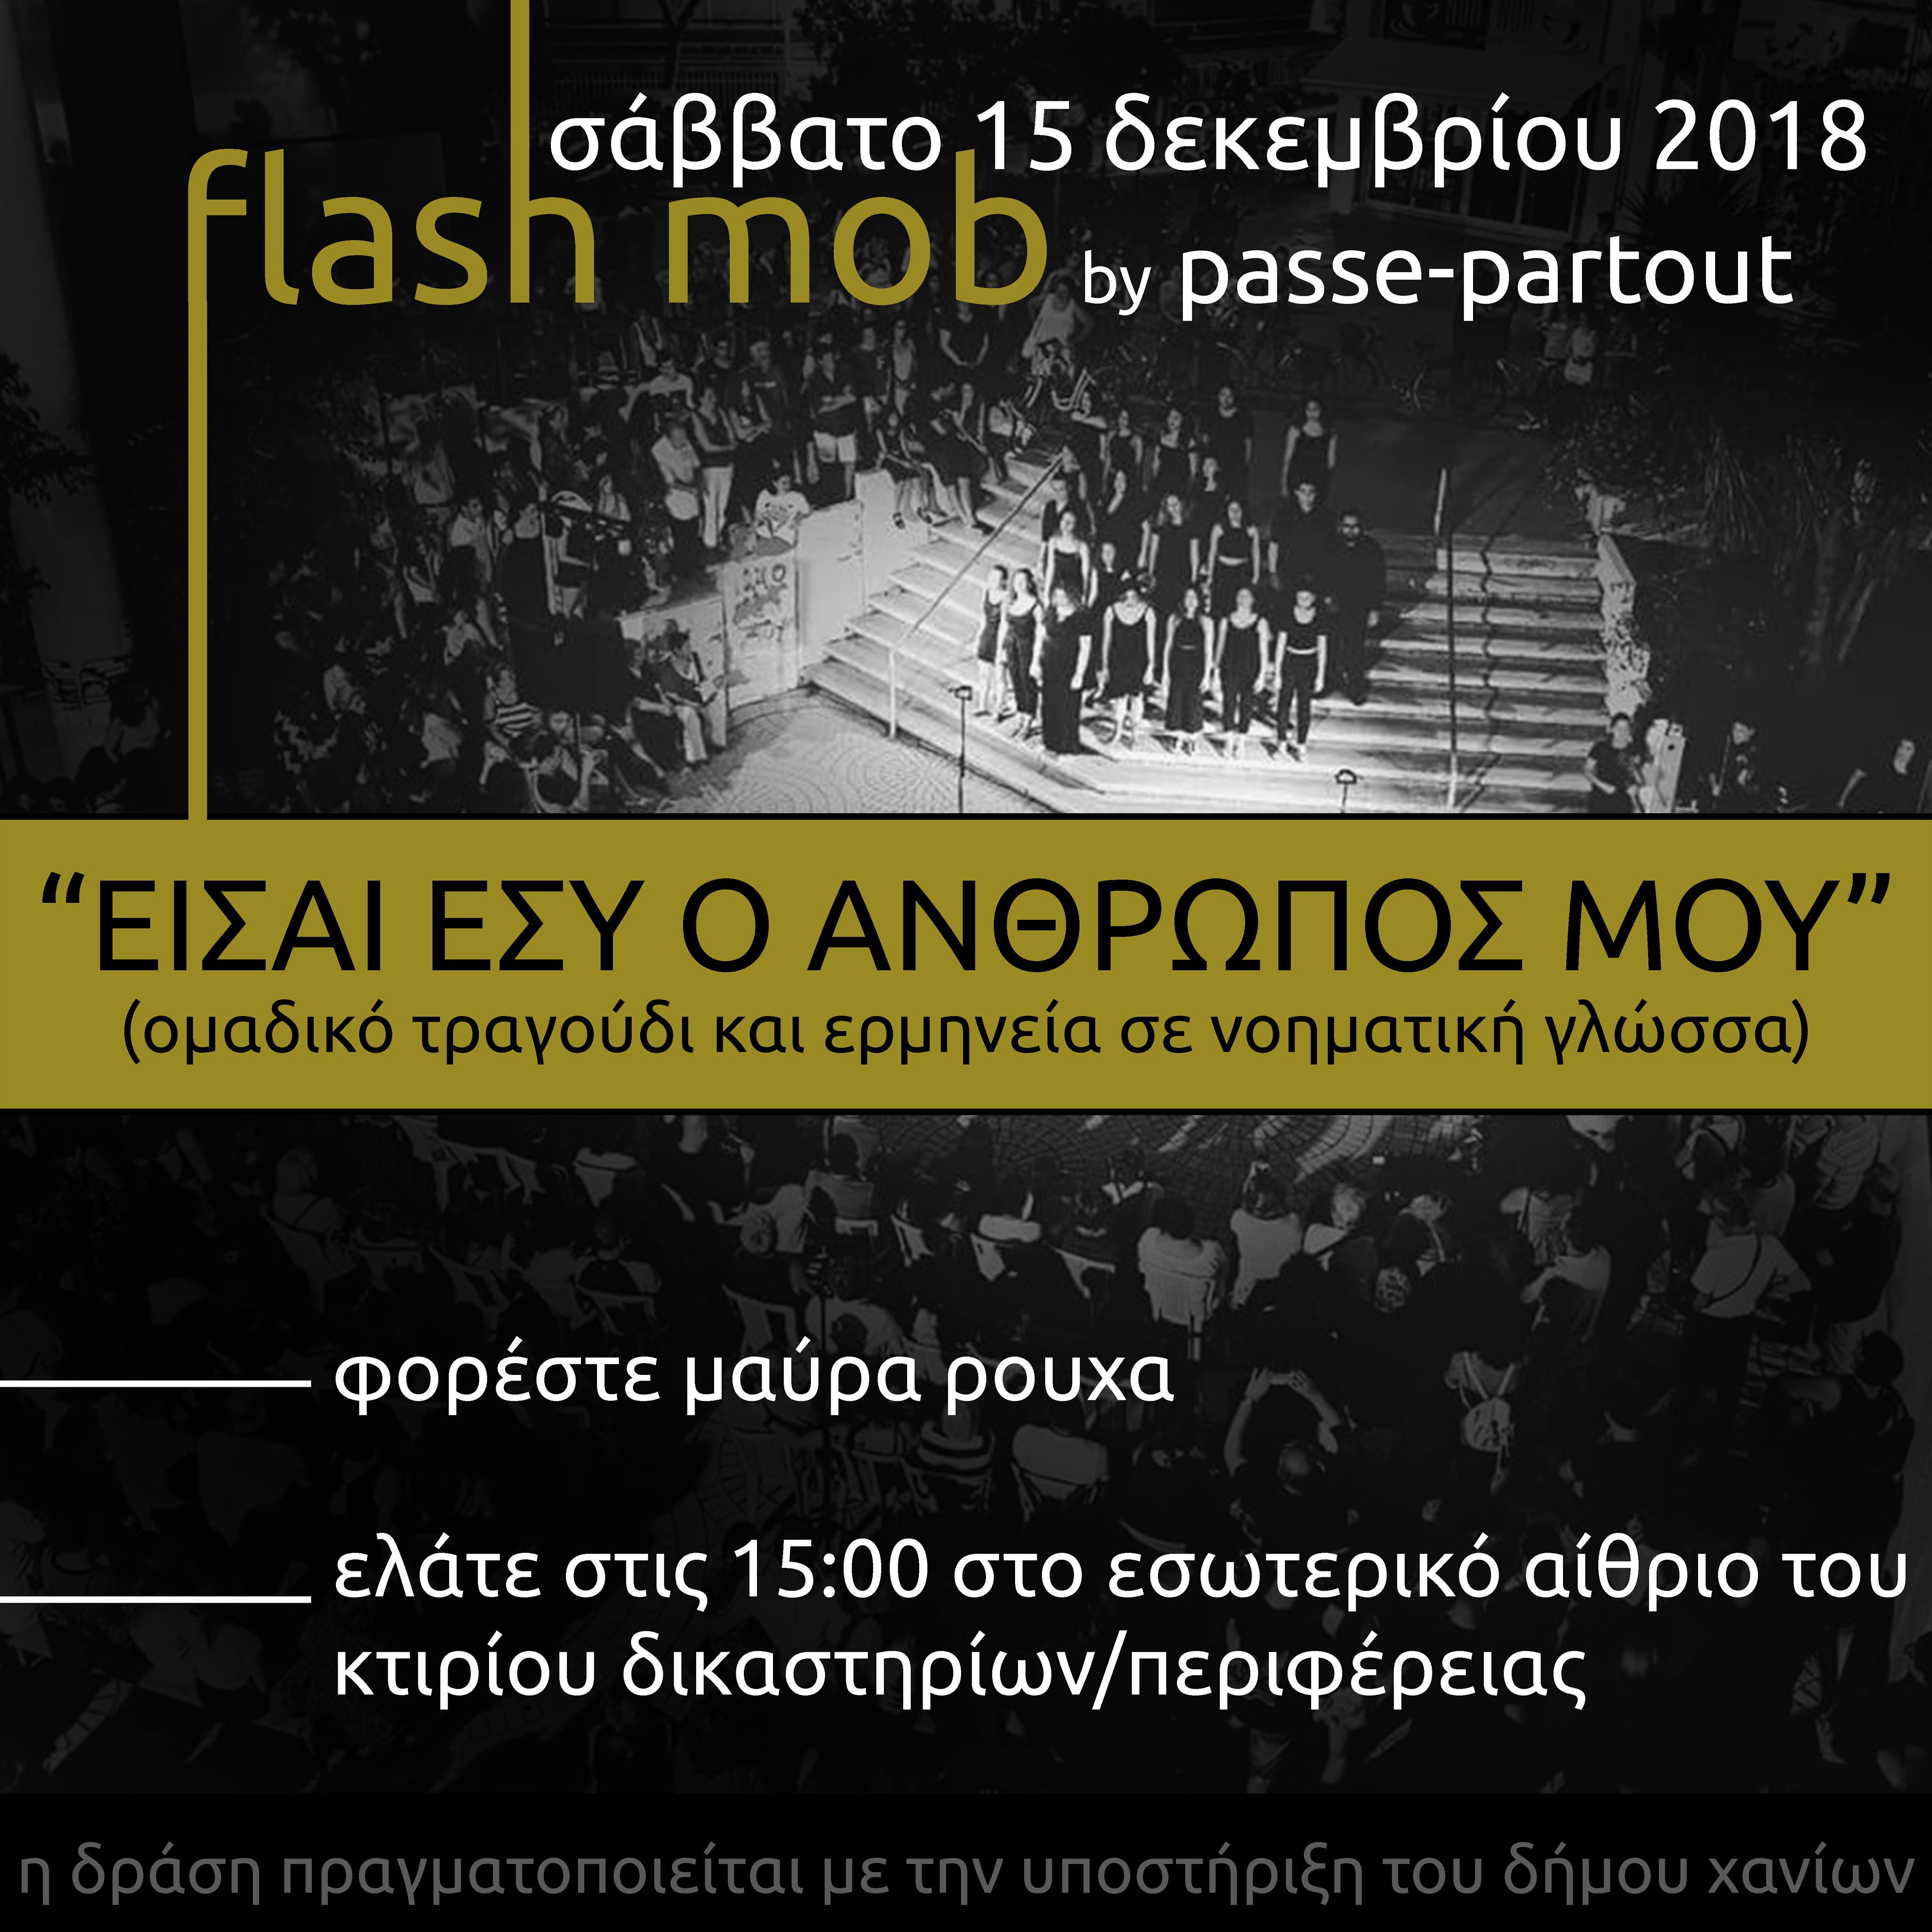 Θέλετε να λάβετε μέρος σε ένα flash mob; Μία μοναδική μουσική εμπειρία